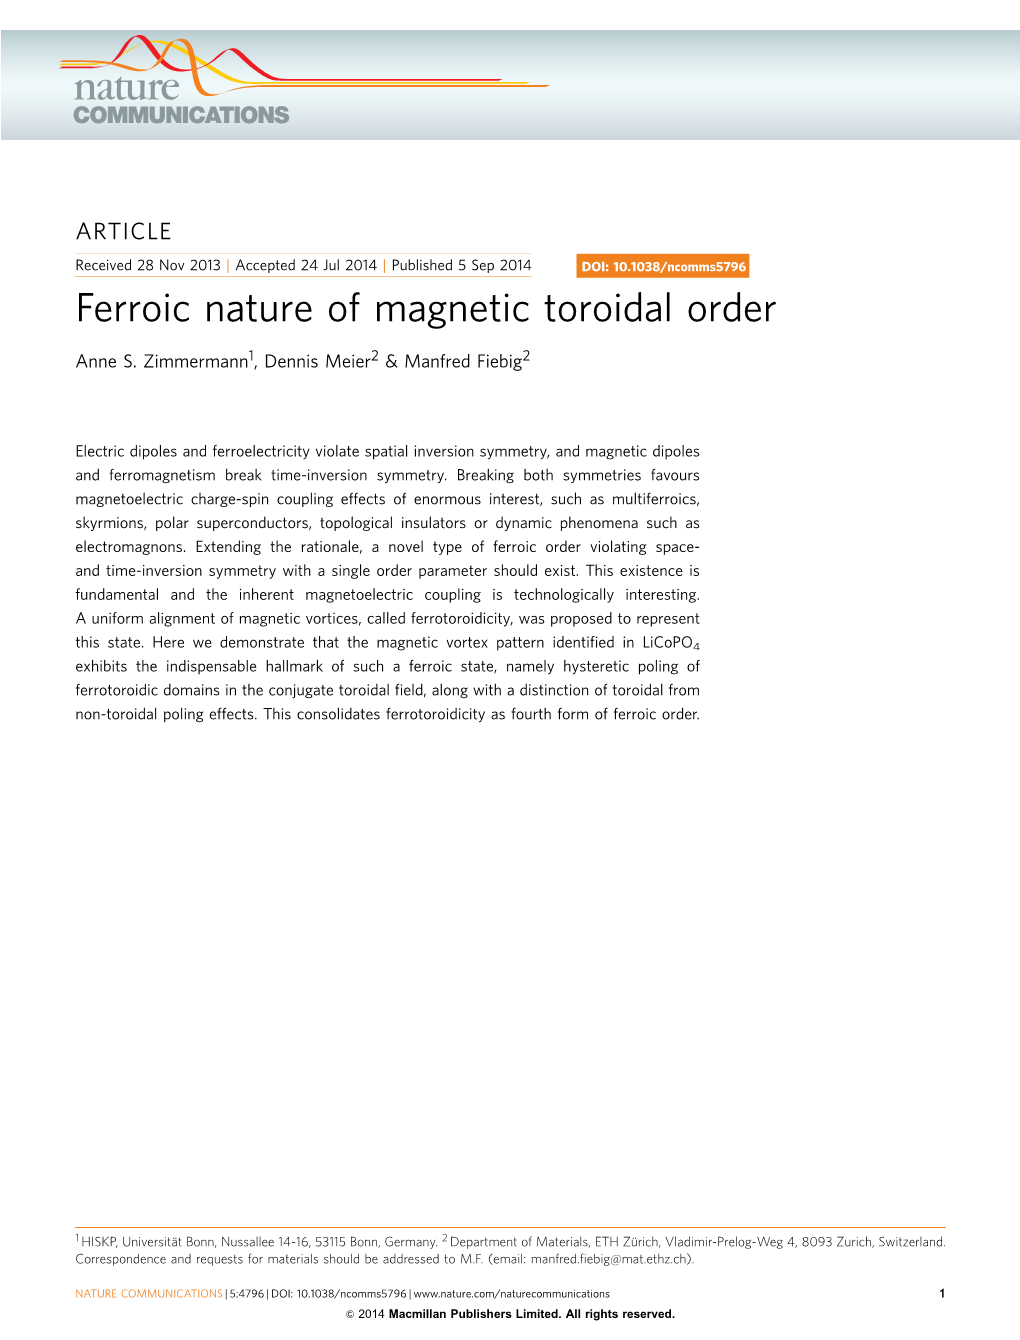 Ferroic Nature of Magnetic Toroidal Order